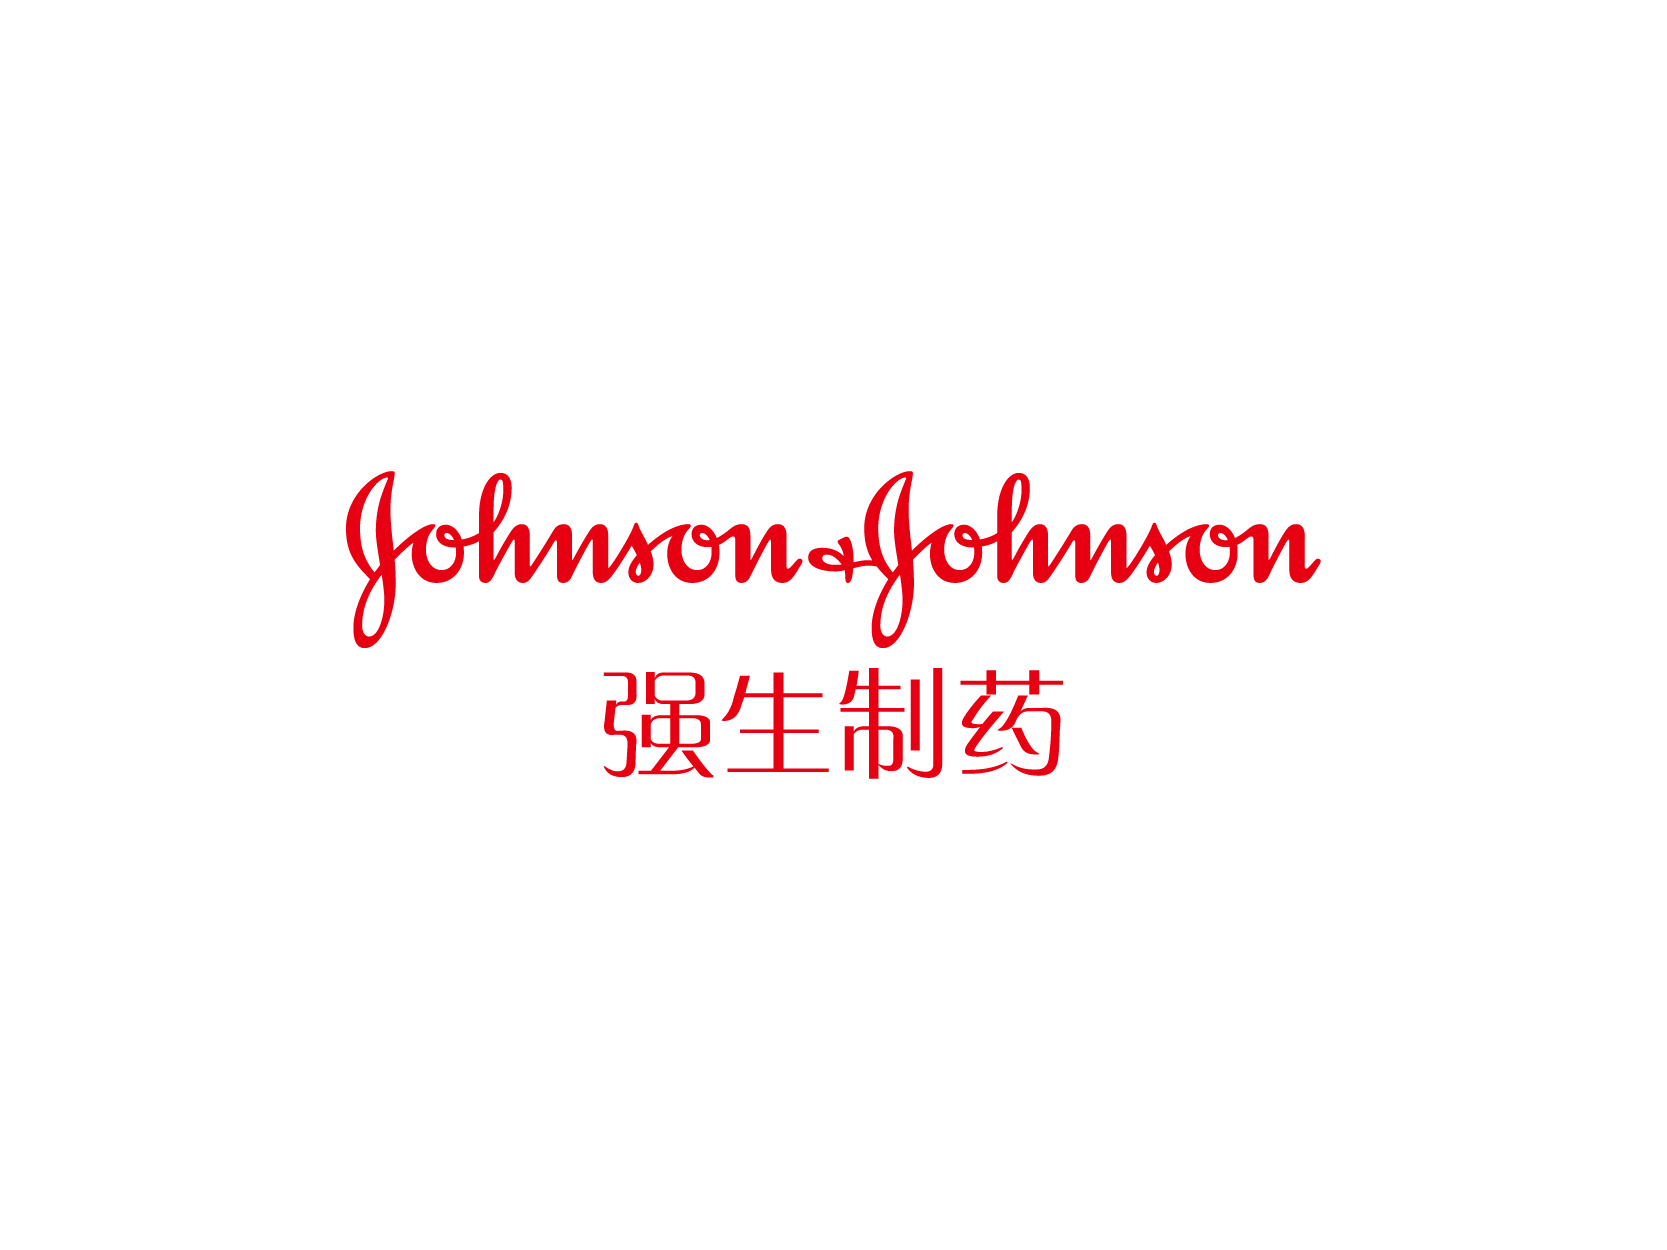 强生公司总部(Johnson & Johnson Headquarters)-办公建筑案例-筑龙建筑设计论坛